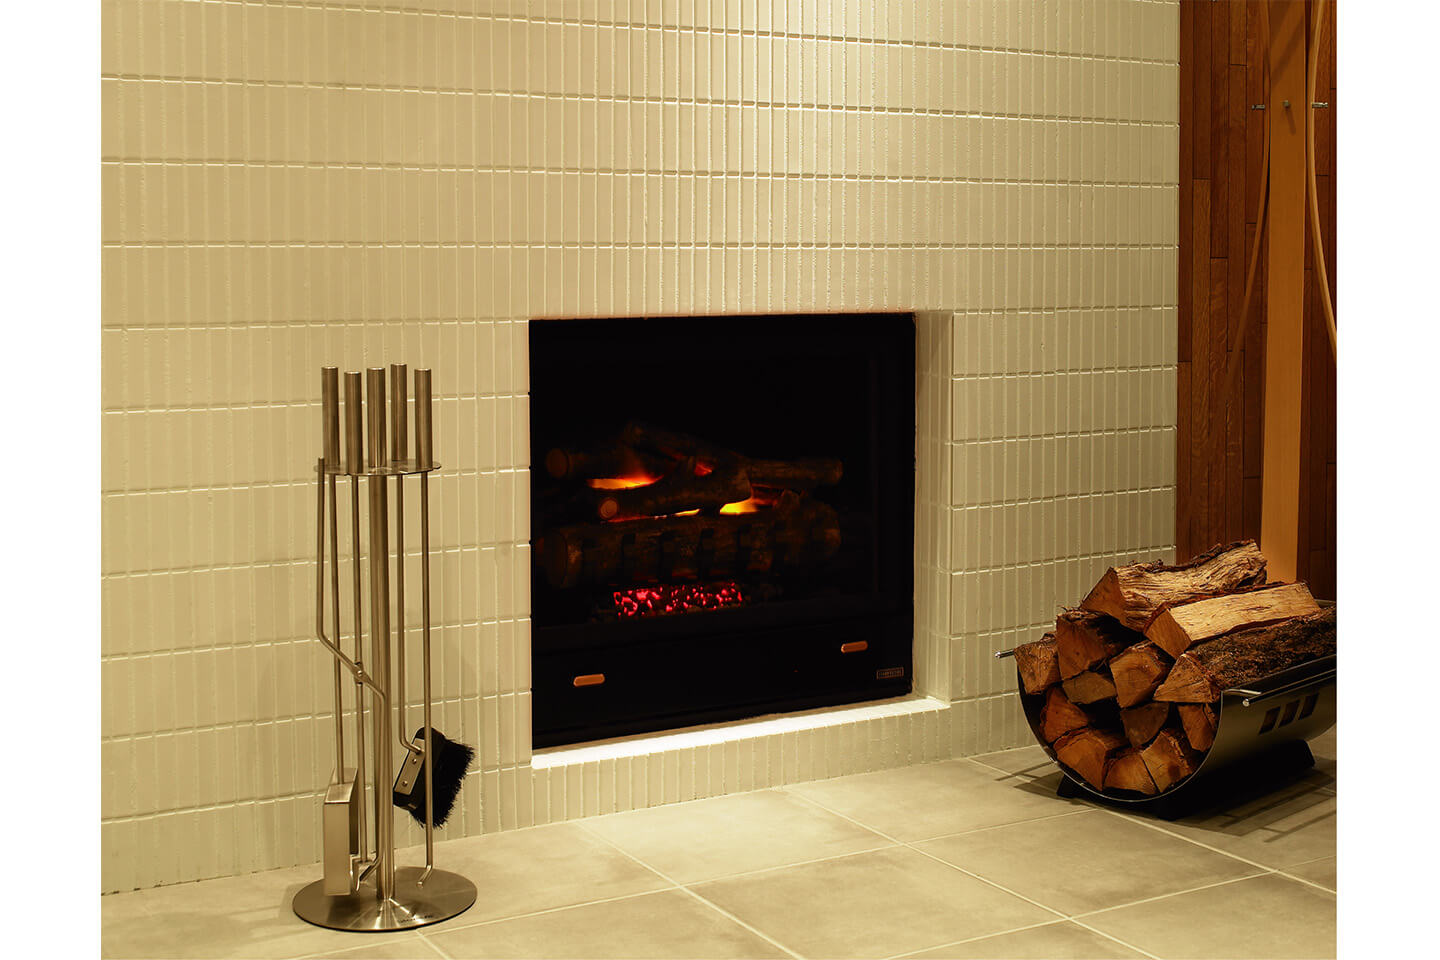 薪ストーブよりも、自分好みの素材や大きさを選べることができるのが暖炉の魅力